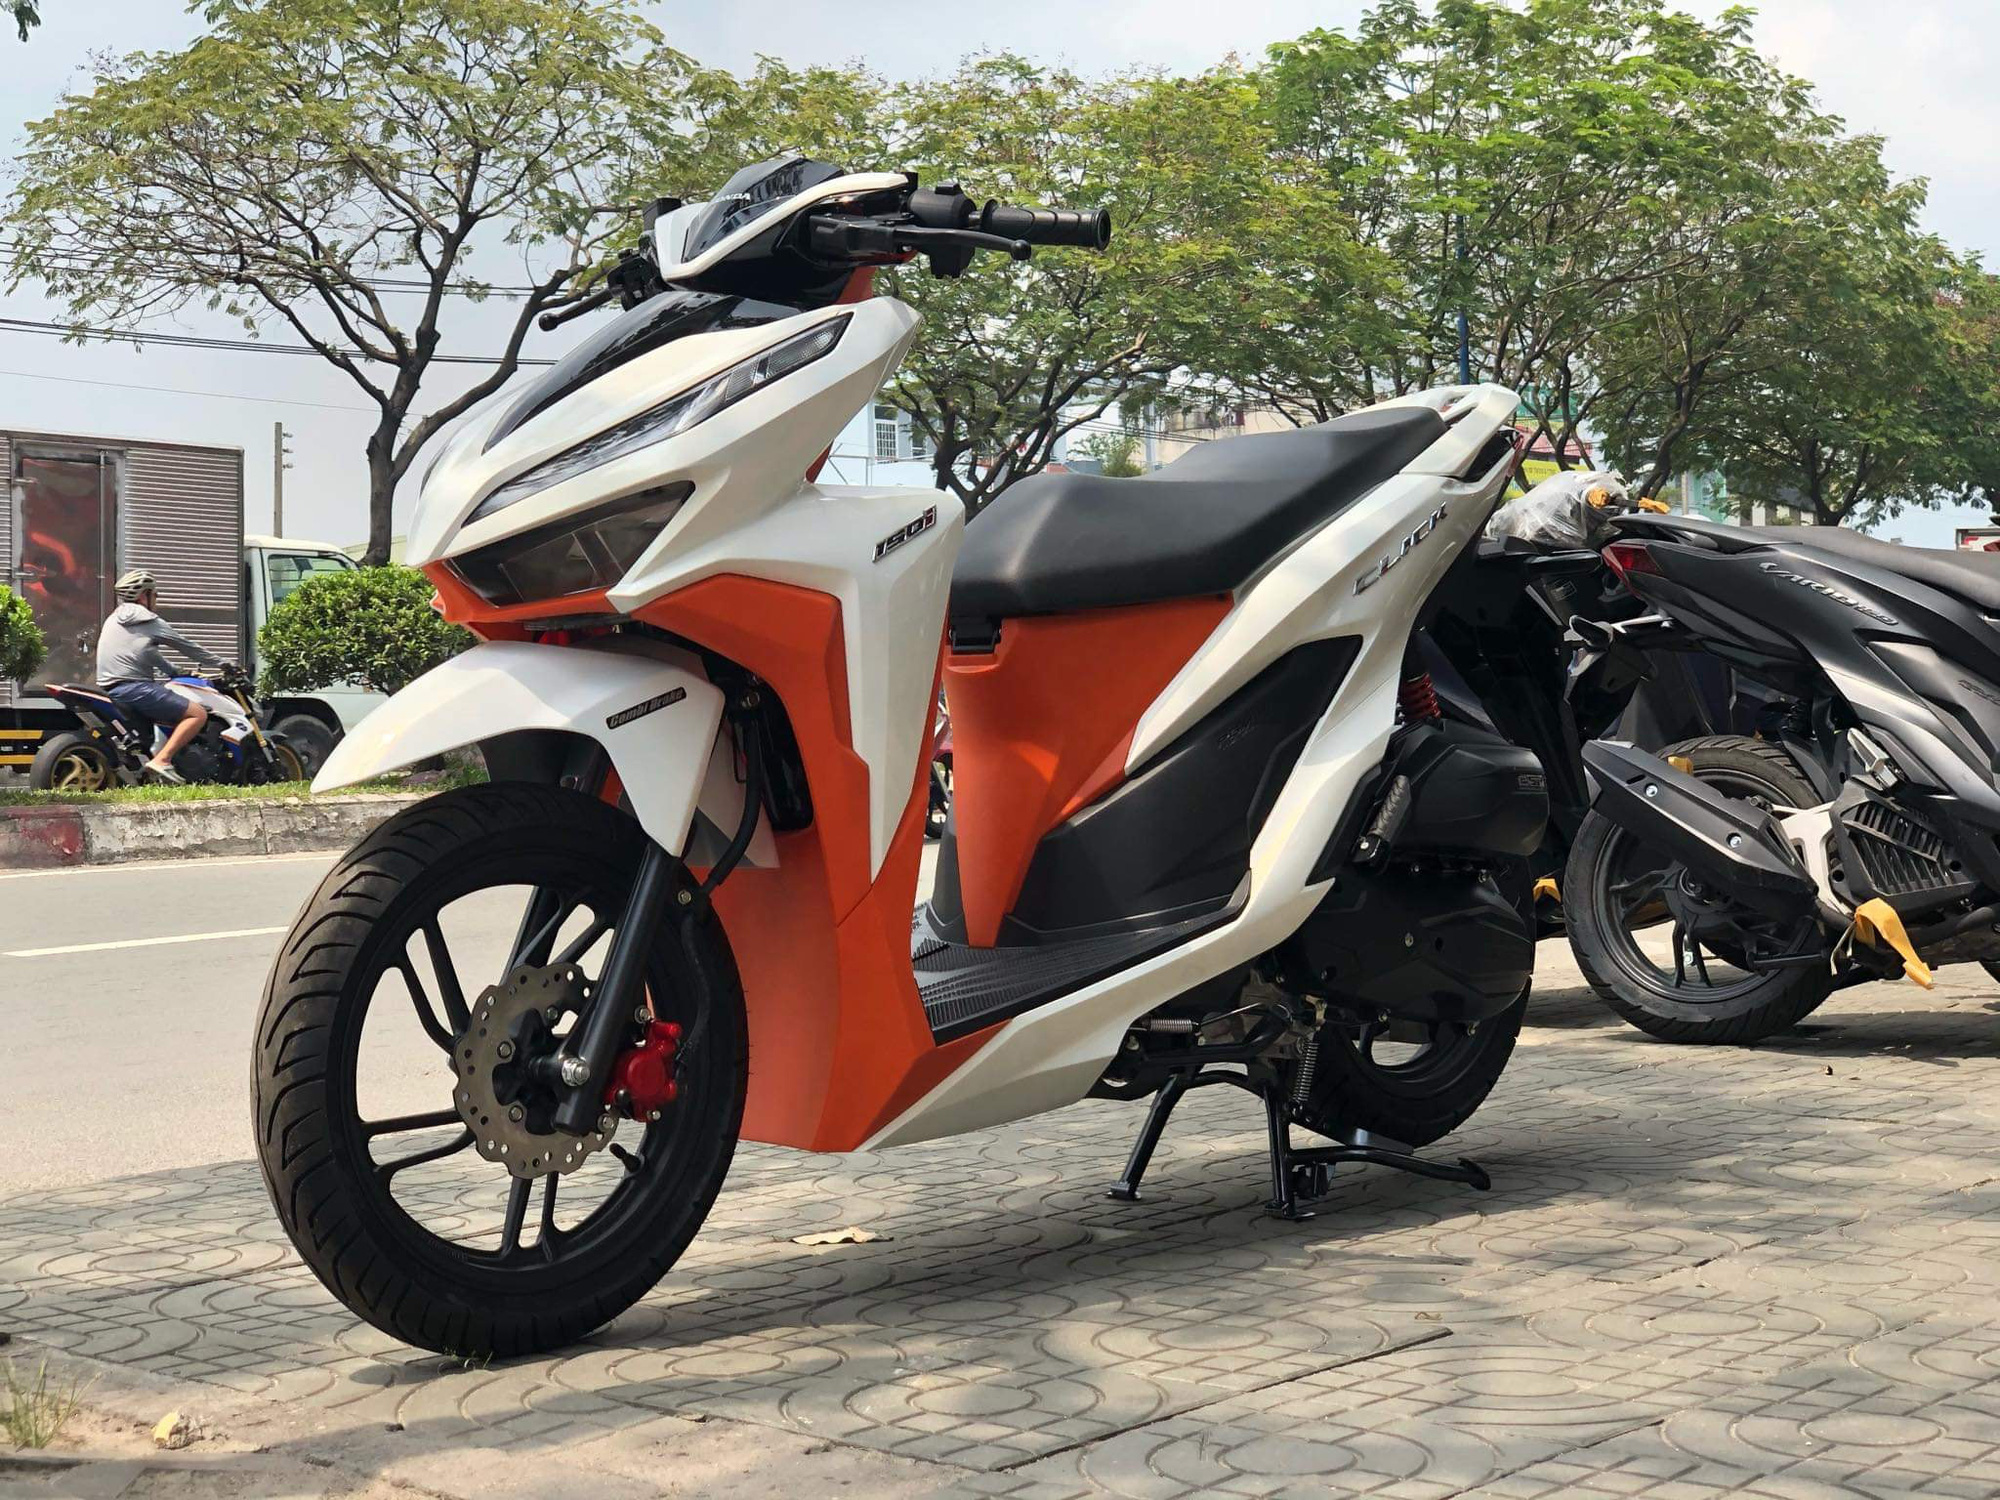 Honda Click 2019 tại Thái Lan có bản nâng cấp giá từ 389 triệu đồng